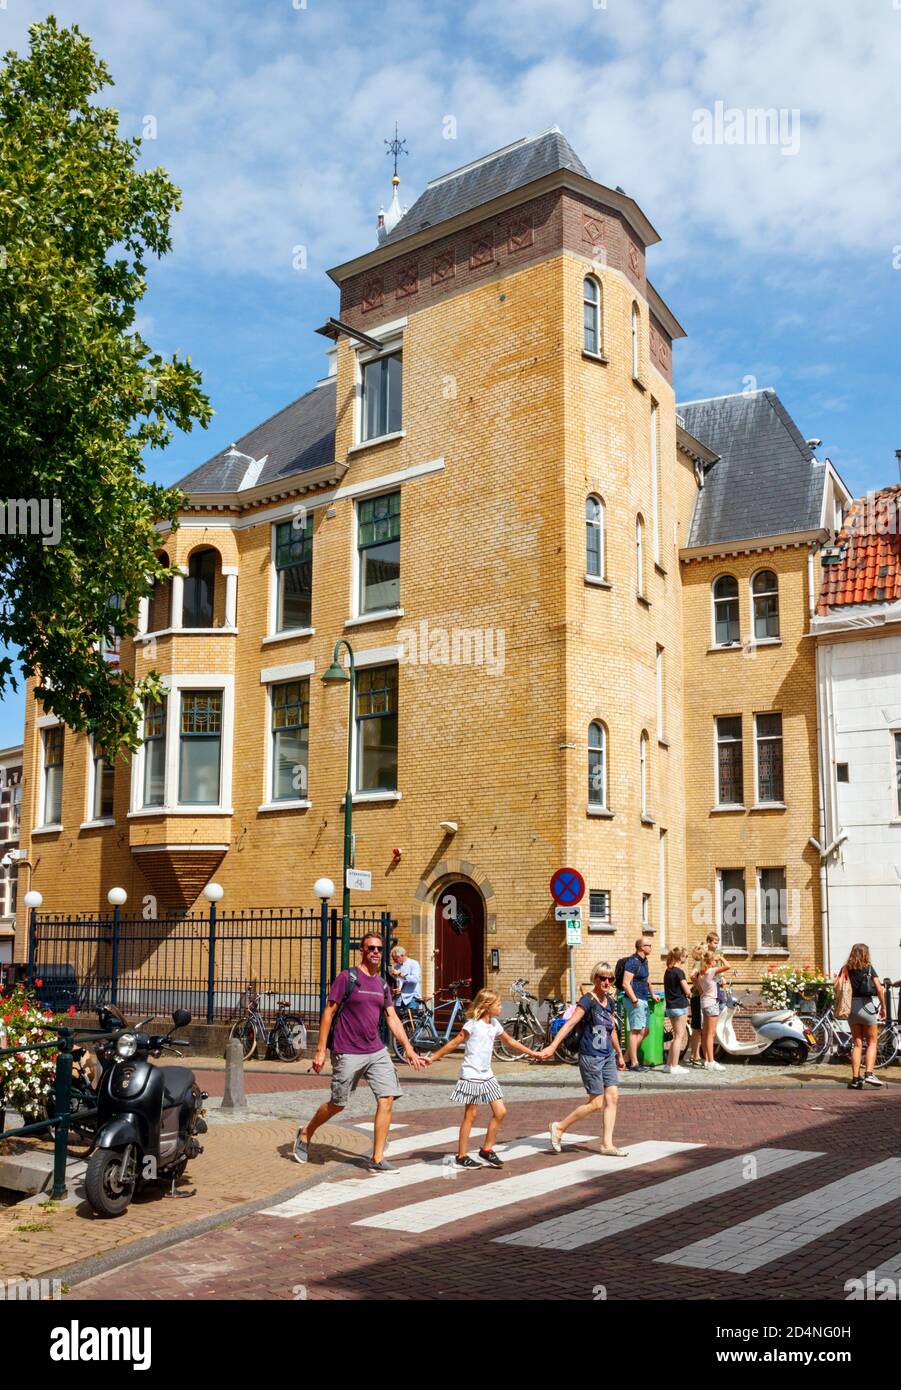 Vista sul centro storico di Gouda. Westhaven strada con il monumento e l'ex magazzino De Zon in un pomeriggio di sole. Olanda meridionale, Paesi Bassi. Foto Stock